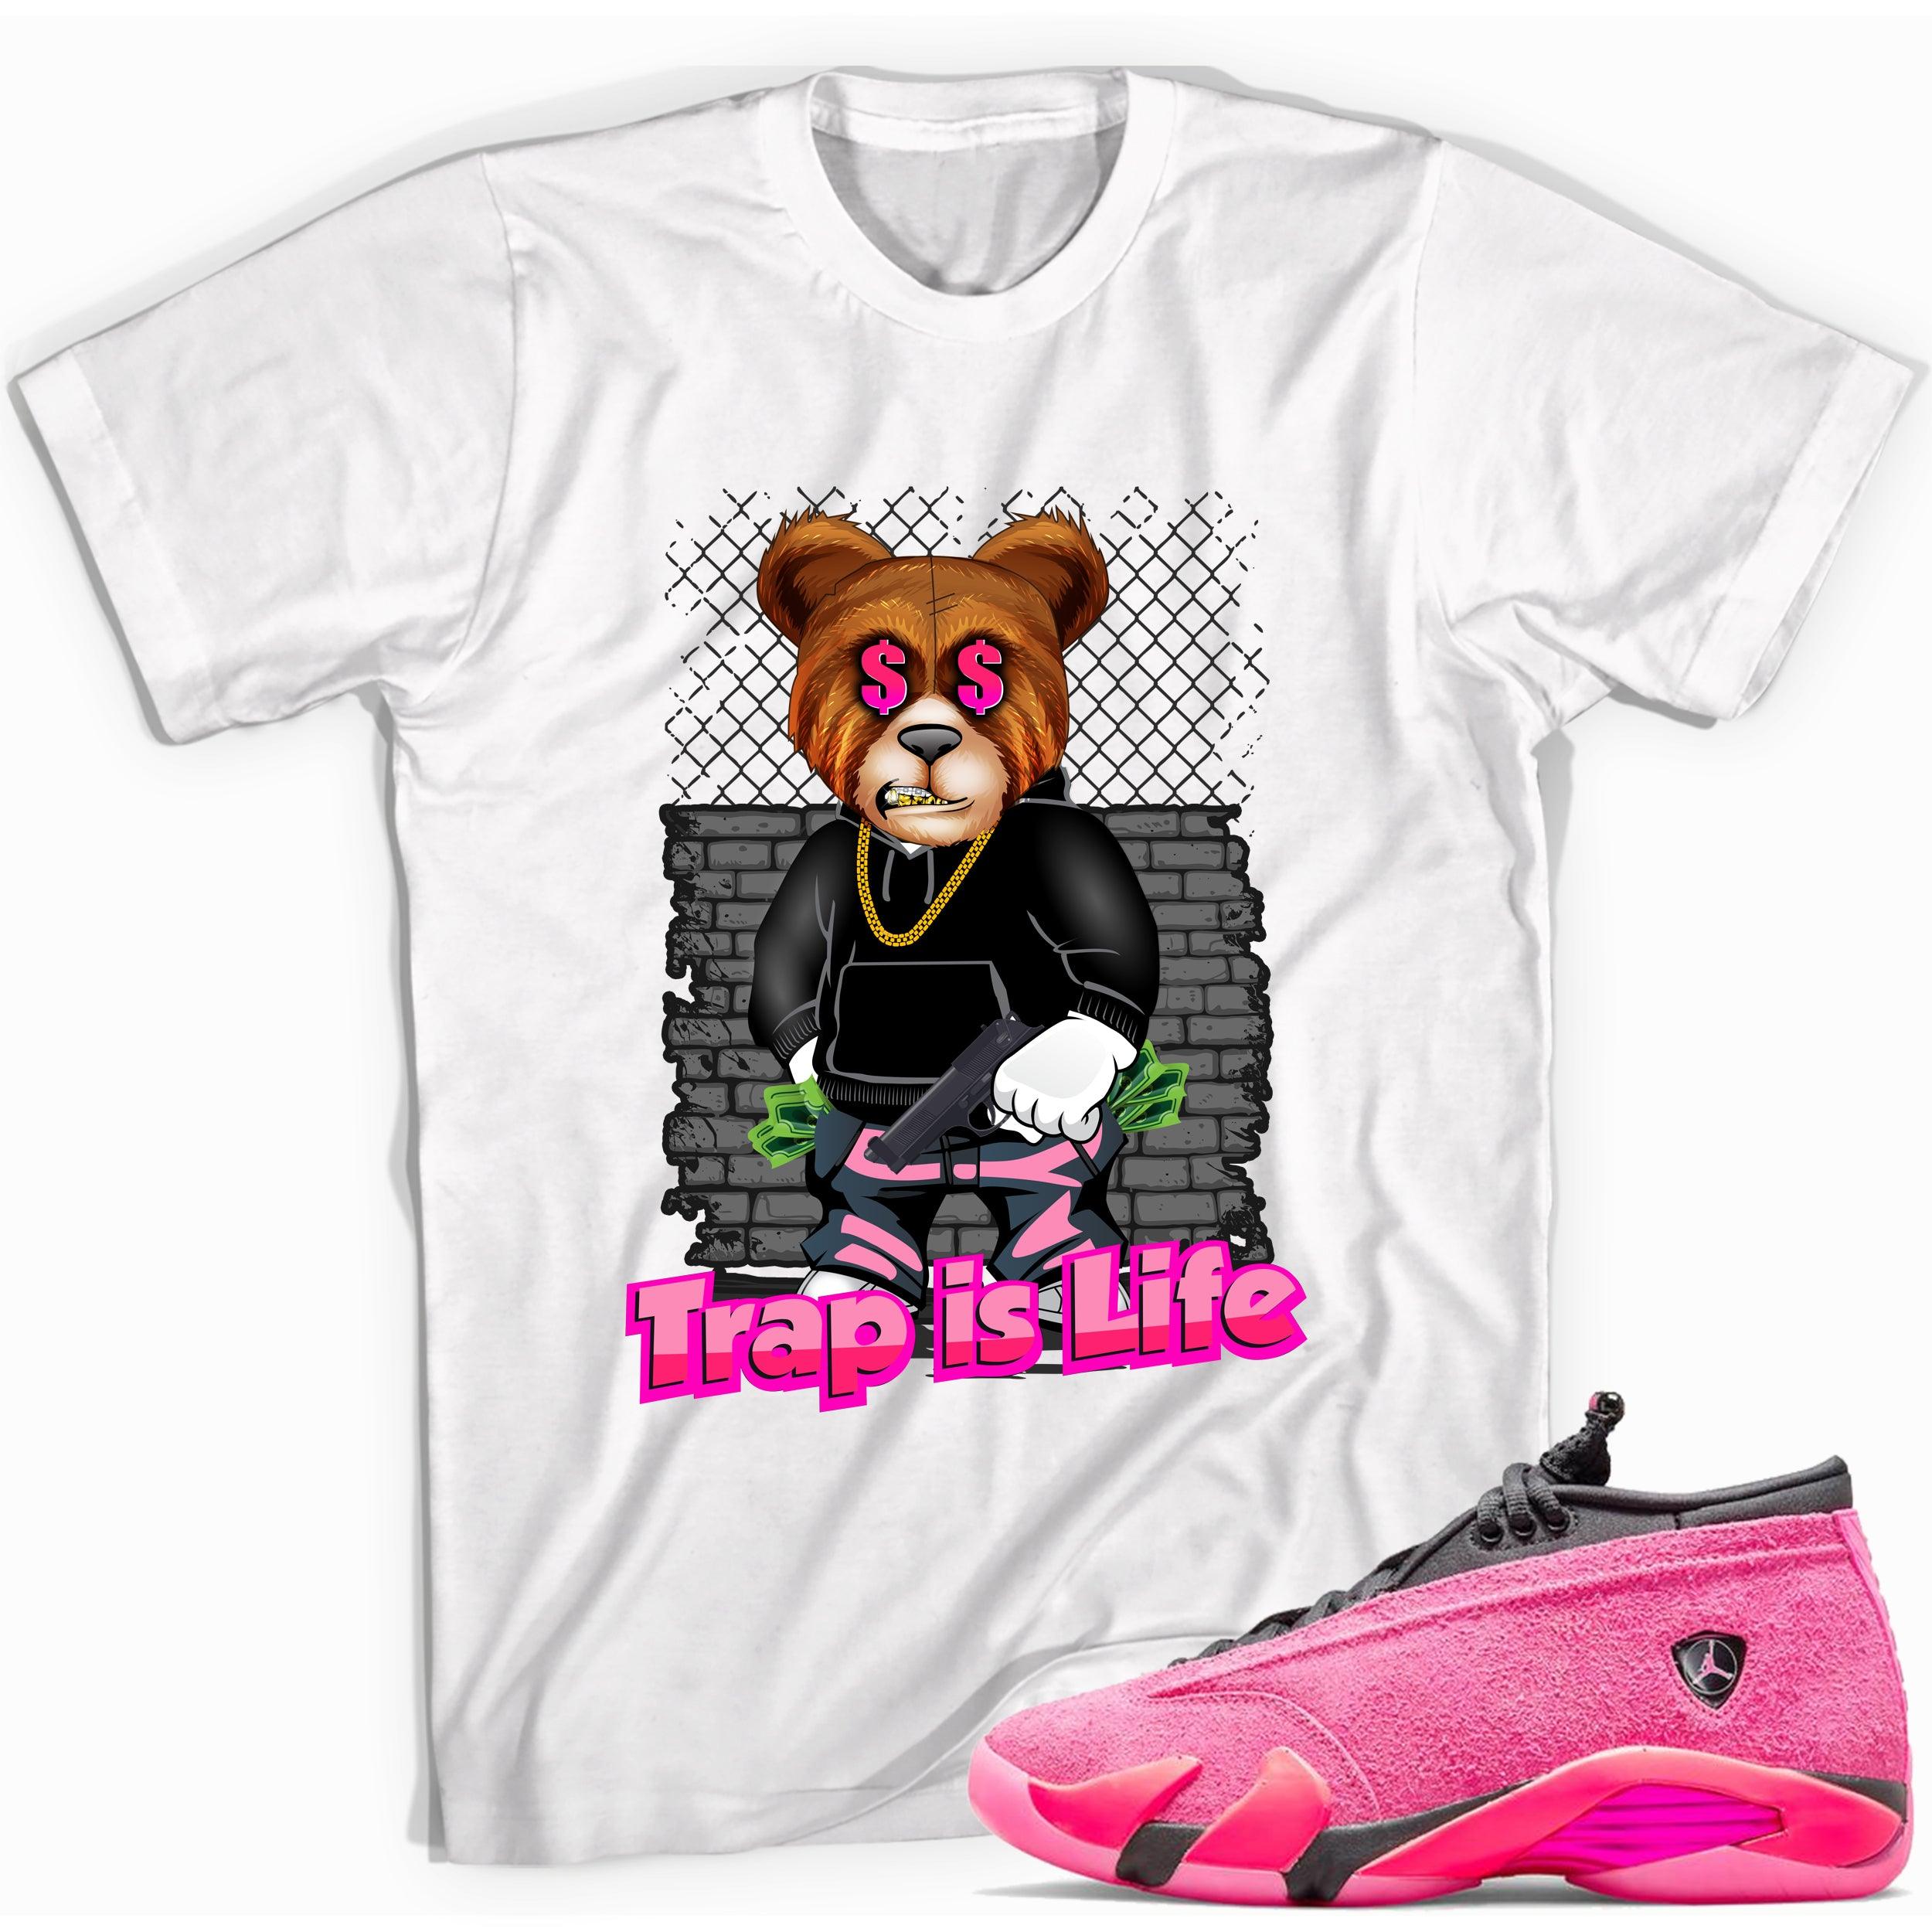 Trap Is Life Shirt Jordan 14s Low Shocking Pink photo